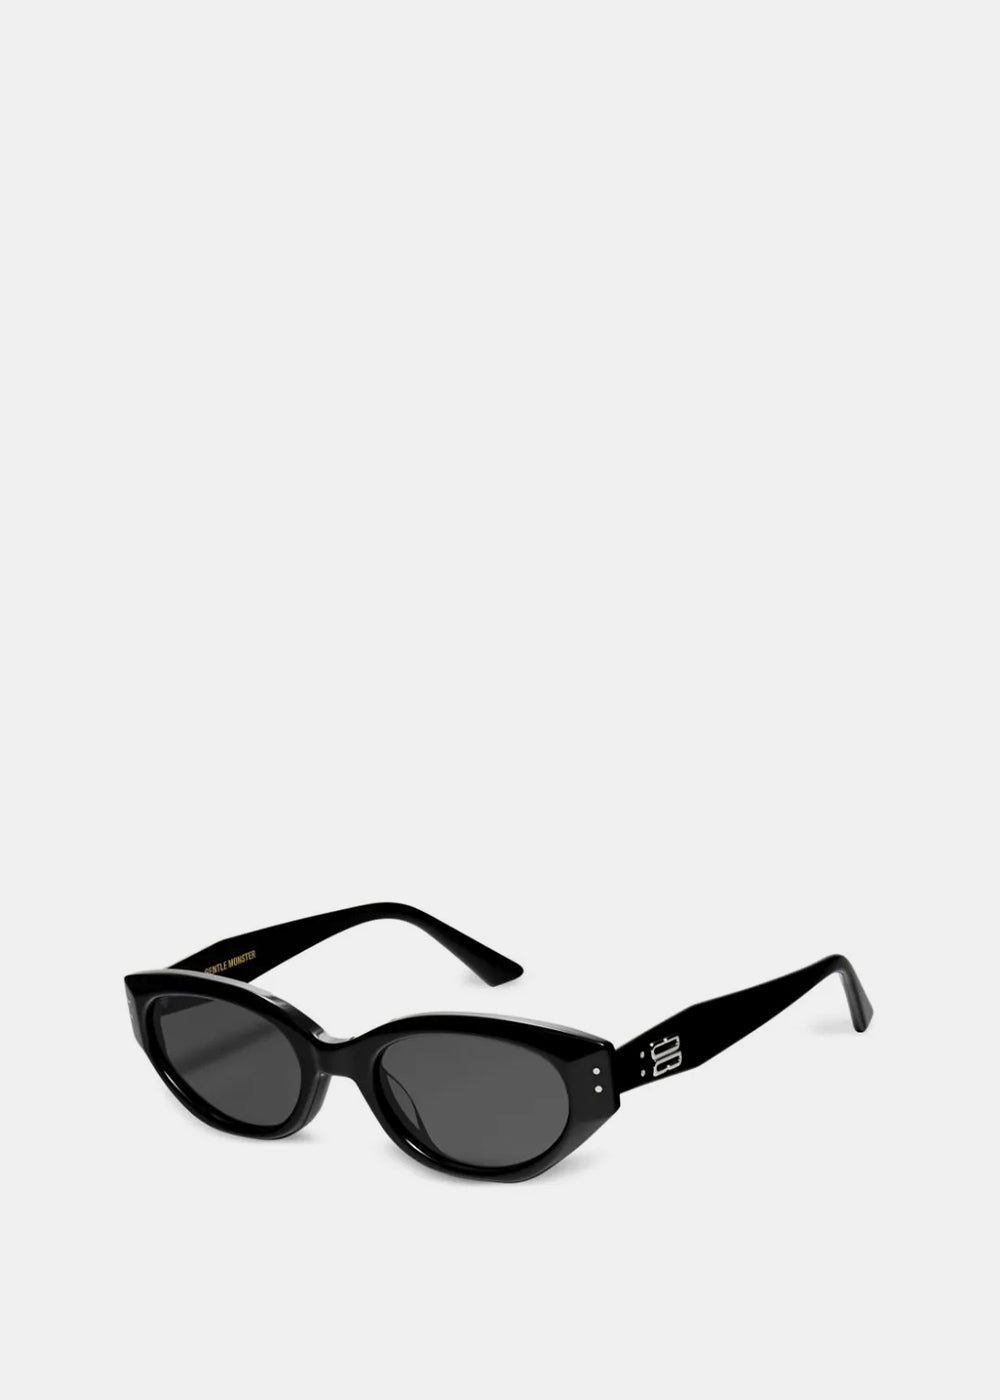 ROCOCO-01 Sunglasses | LEISURE CENTER